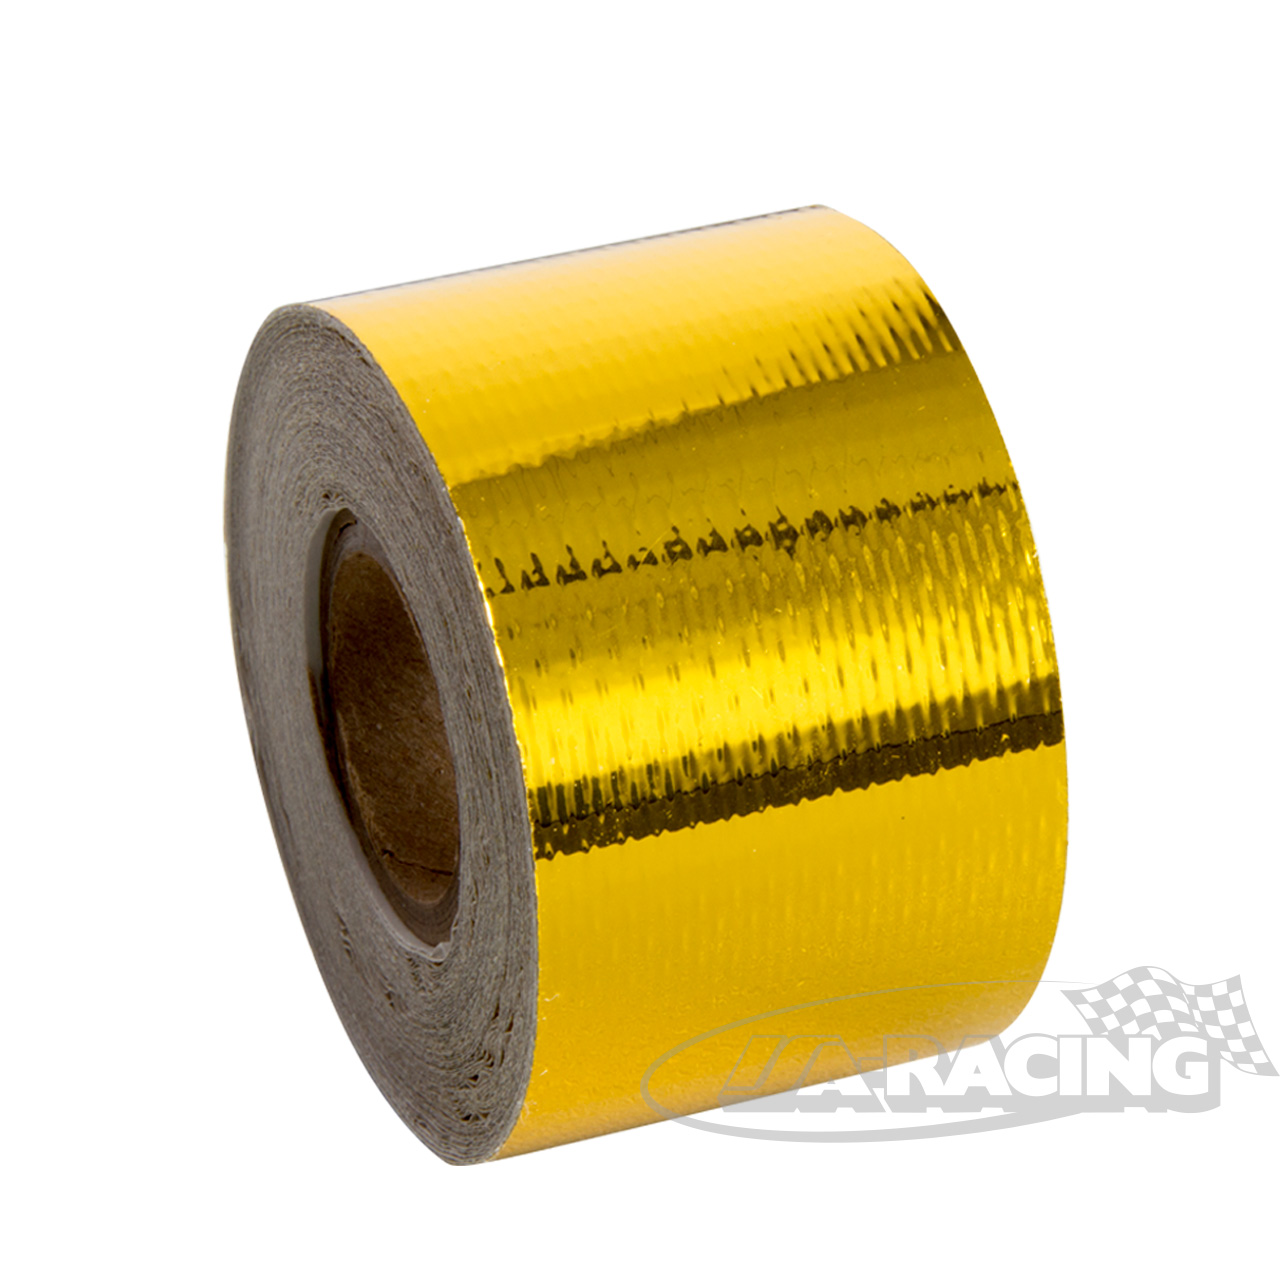 Hitzeschutzband, braun / gold, 5 m x 50 mm